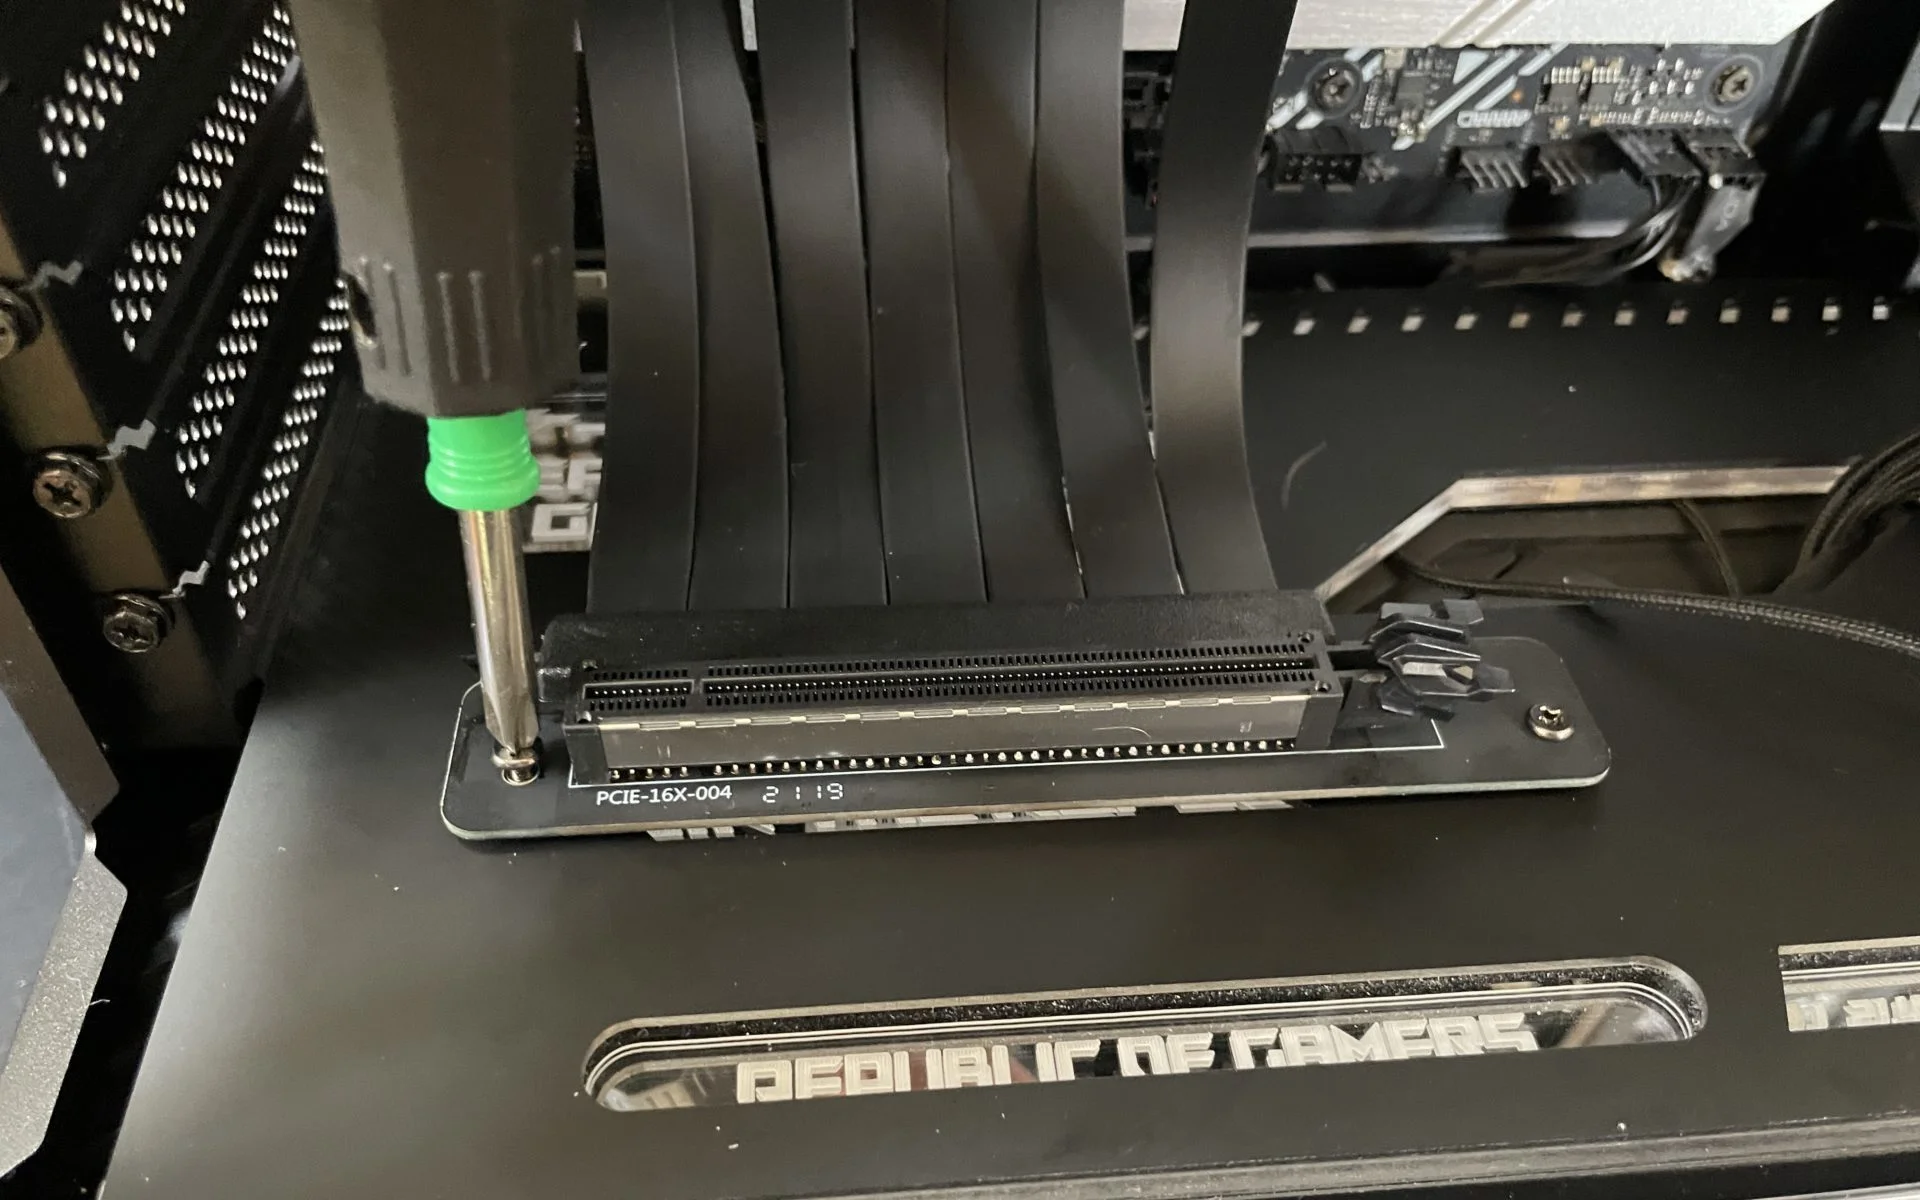 ASUS ROG PCIE ライザーケーブル　3.0 美品